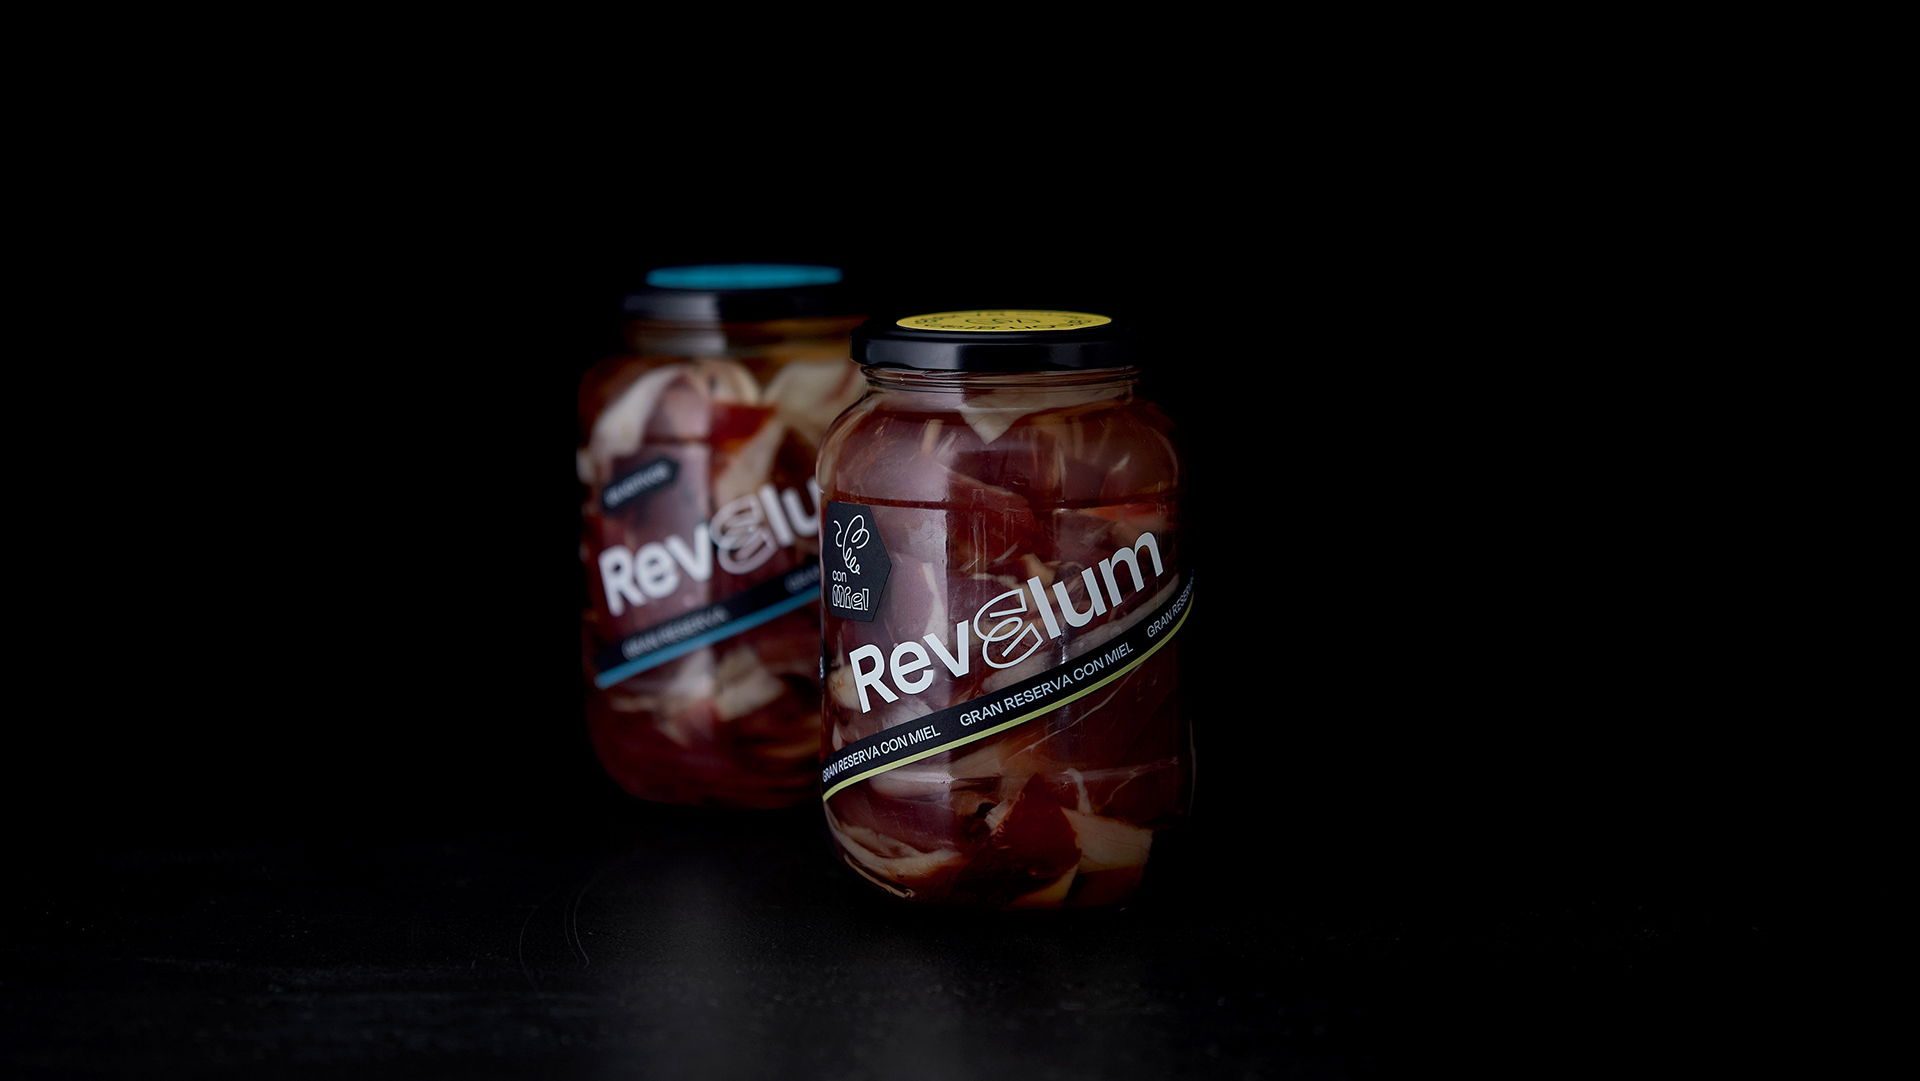 Revelum’s Ham Packaging Breaks The Category